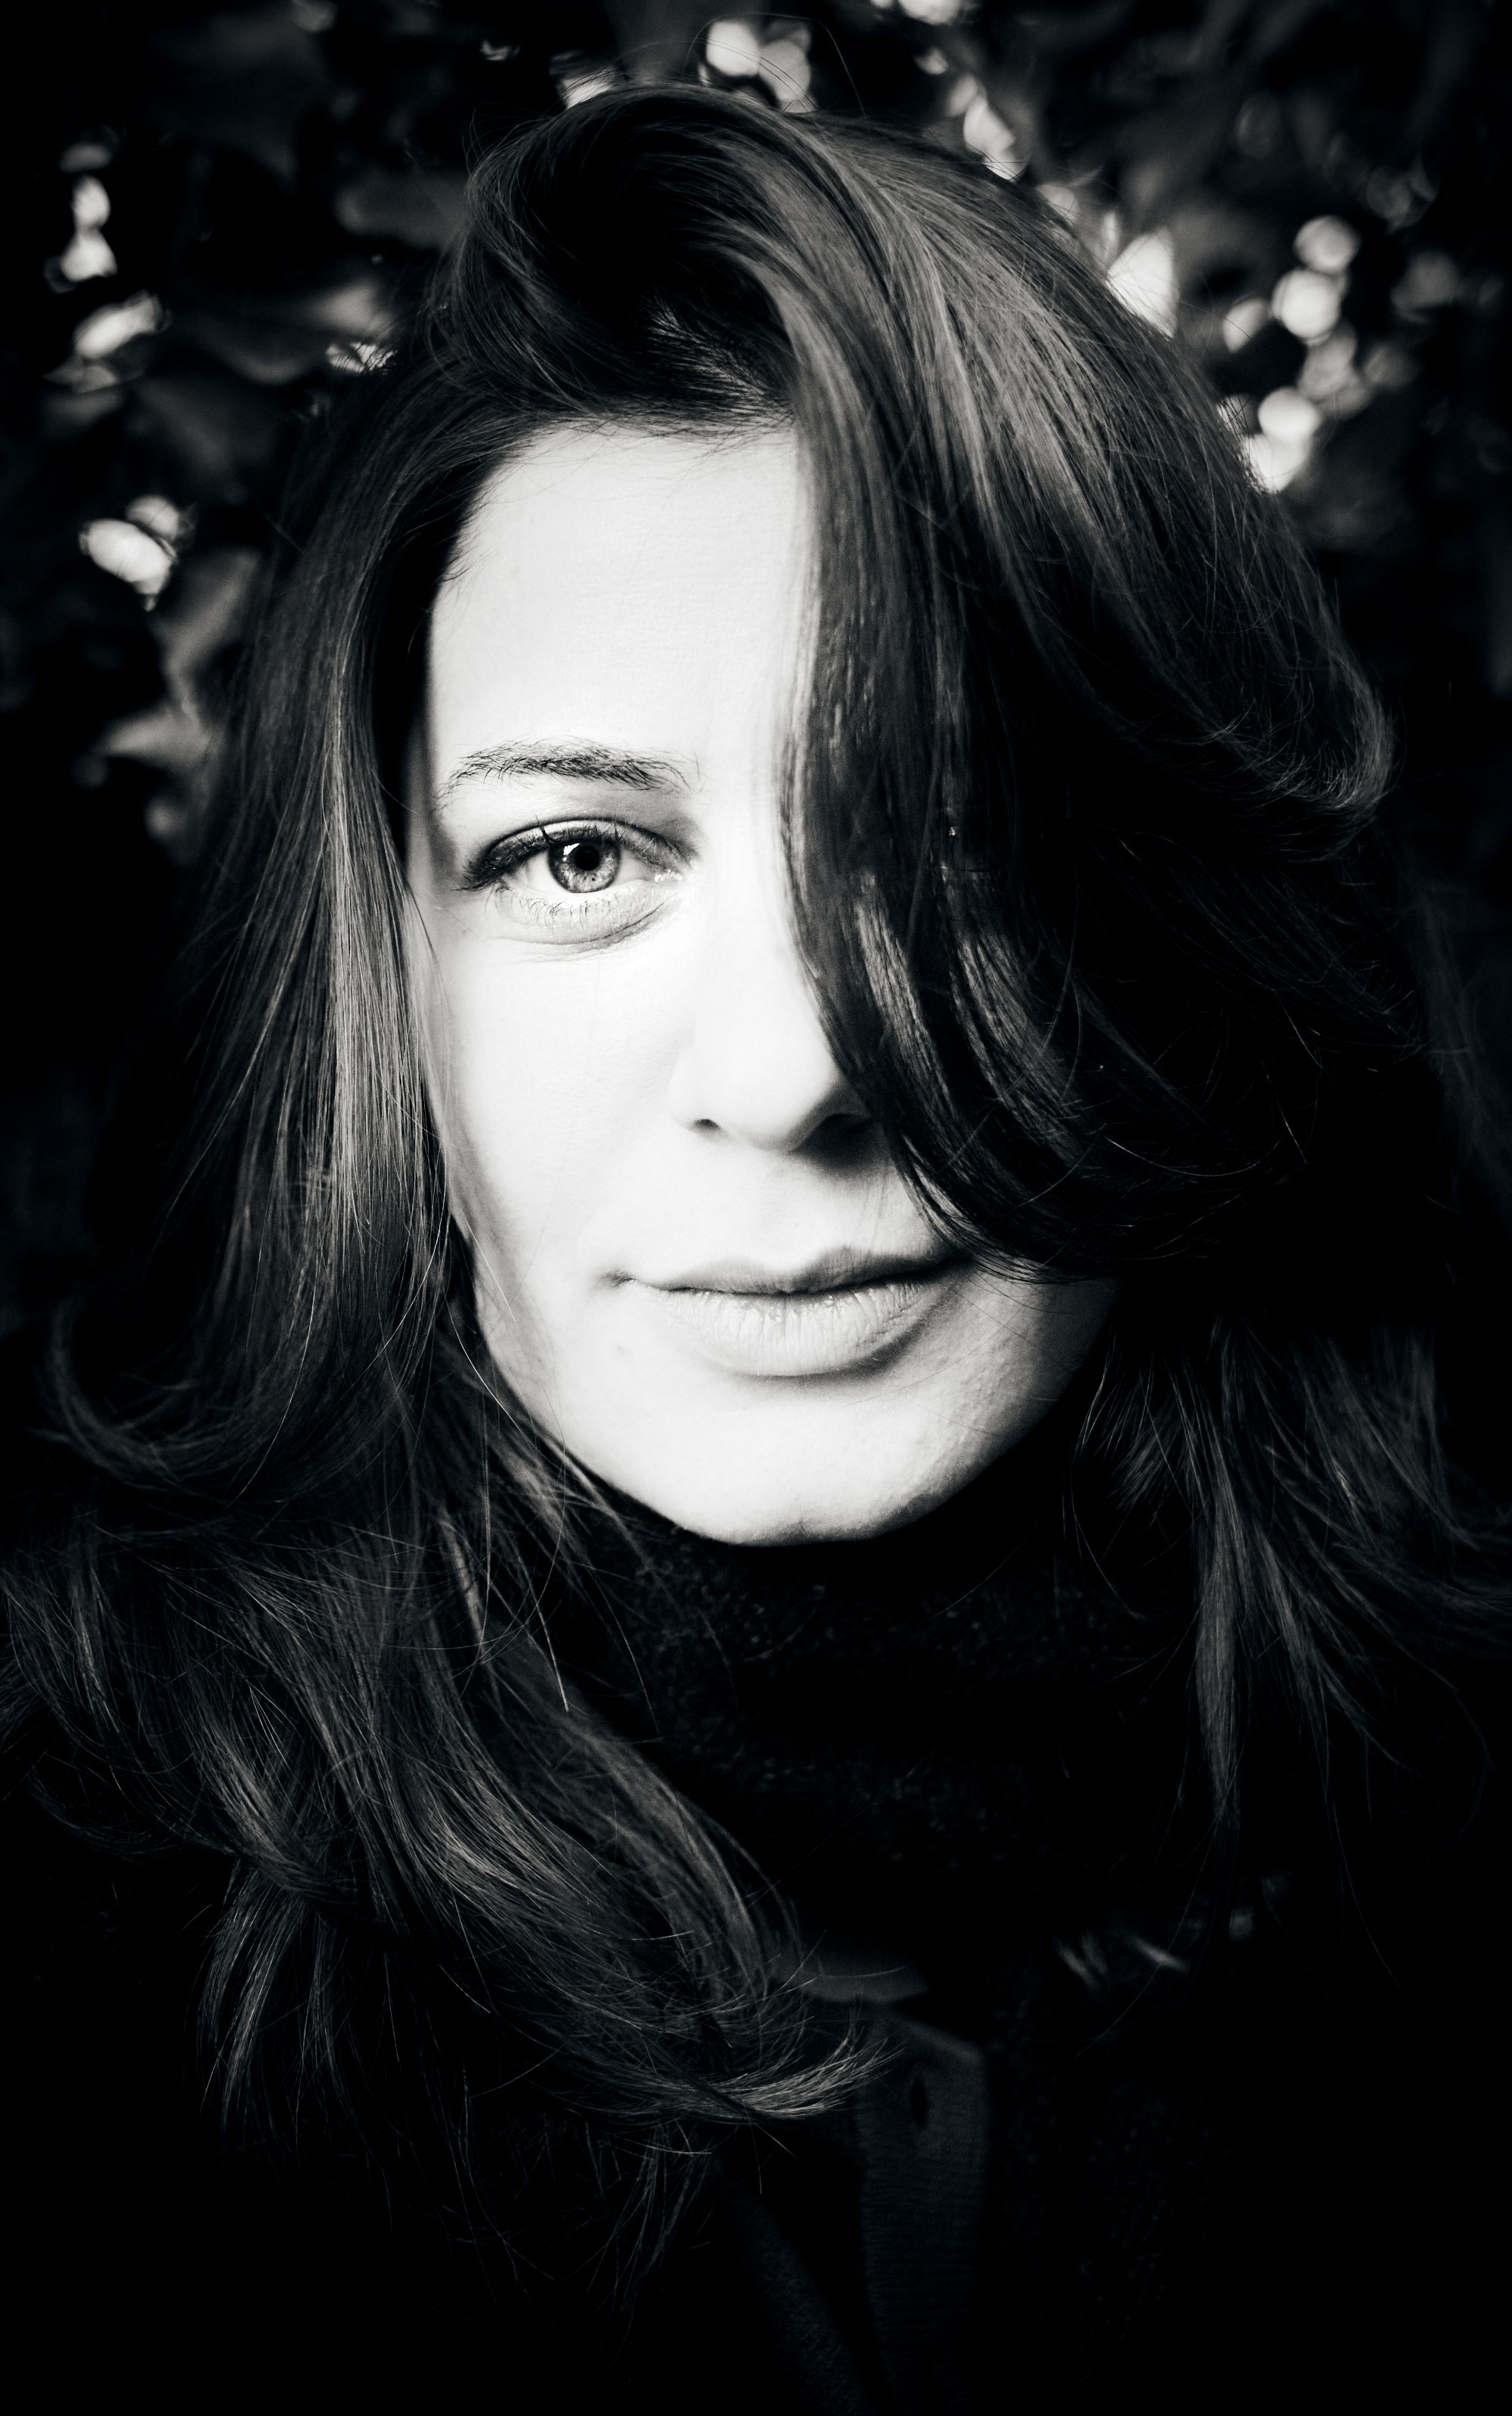 Ritratto di una giovane donna in bianco e nero.